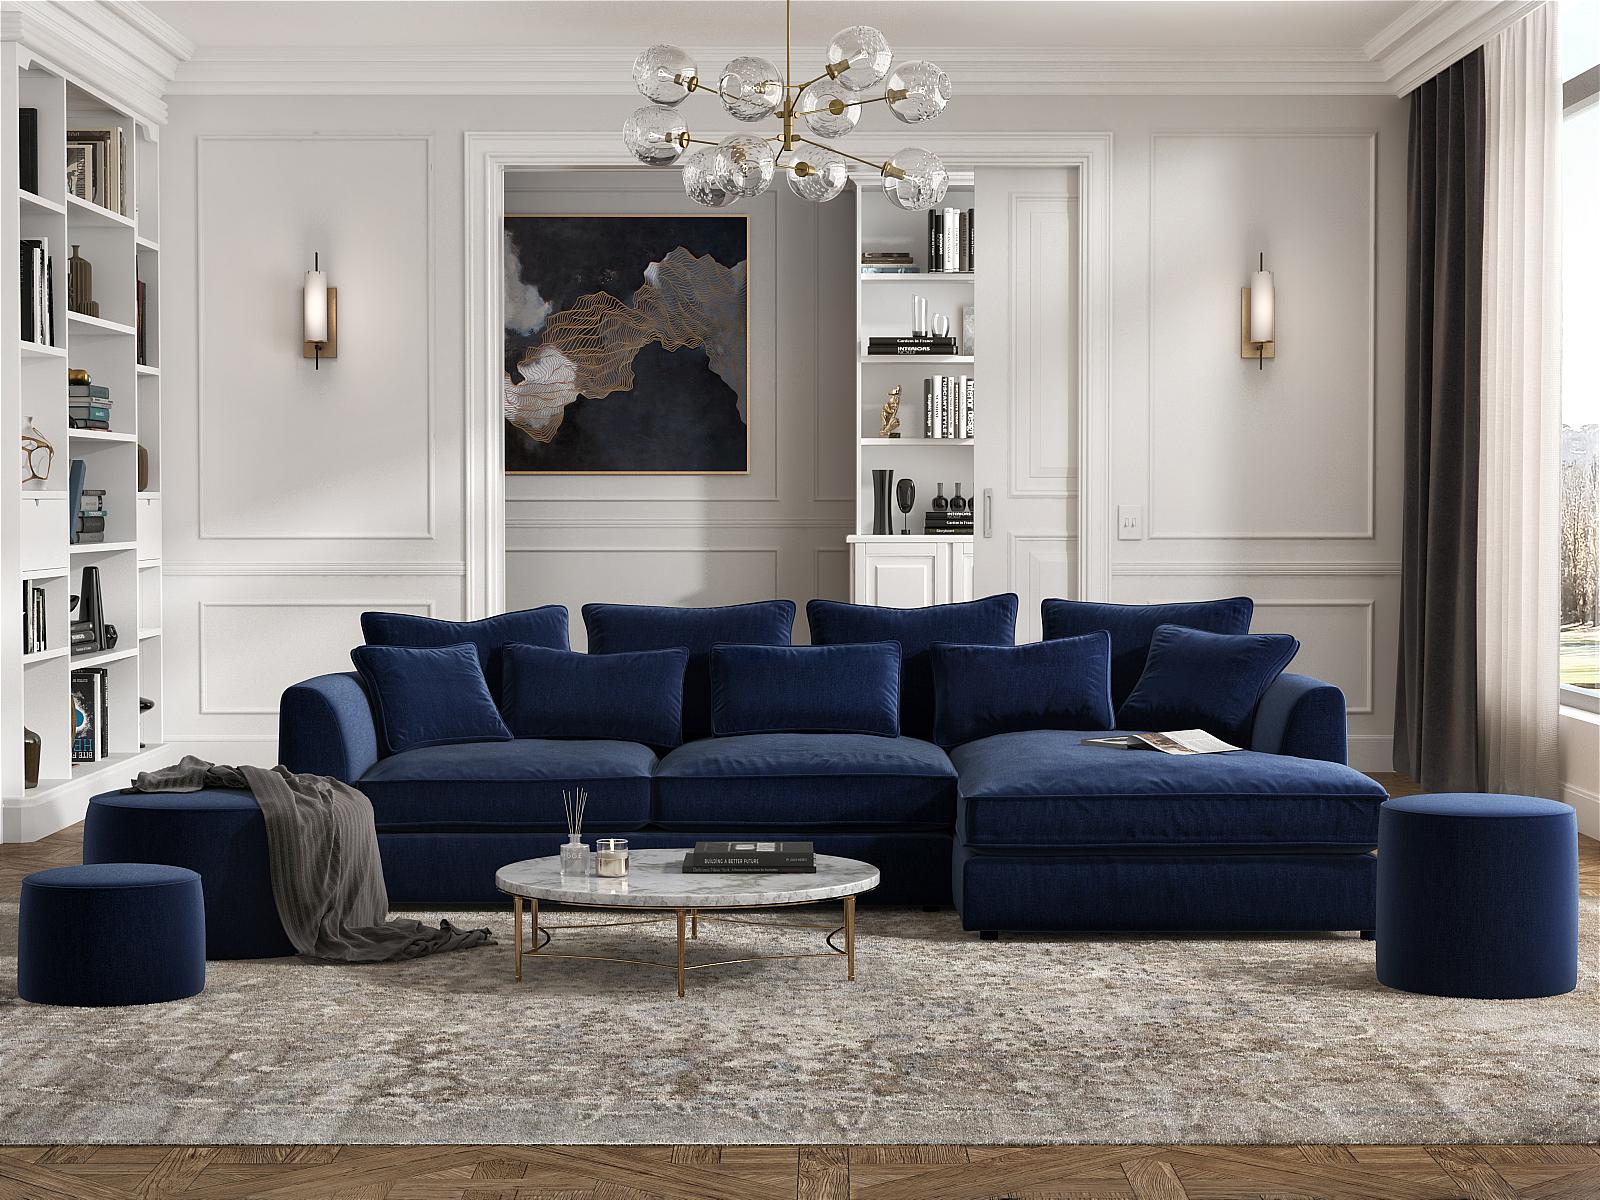 Modular sofa - TIME - PIANCA - corner / contemporary / white